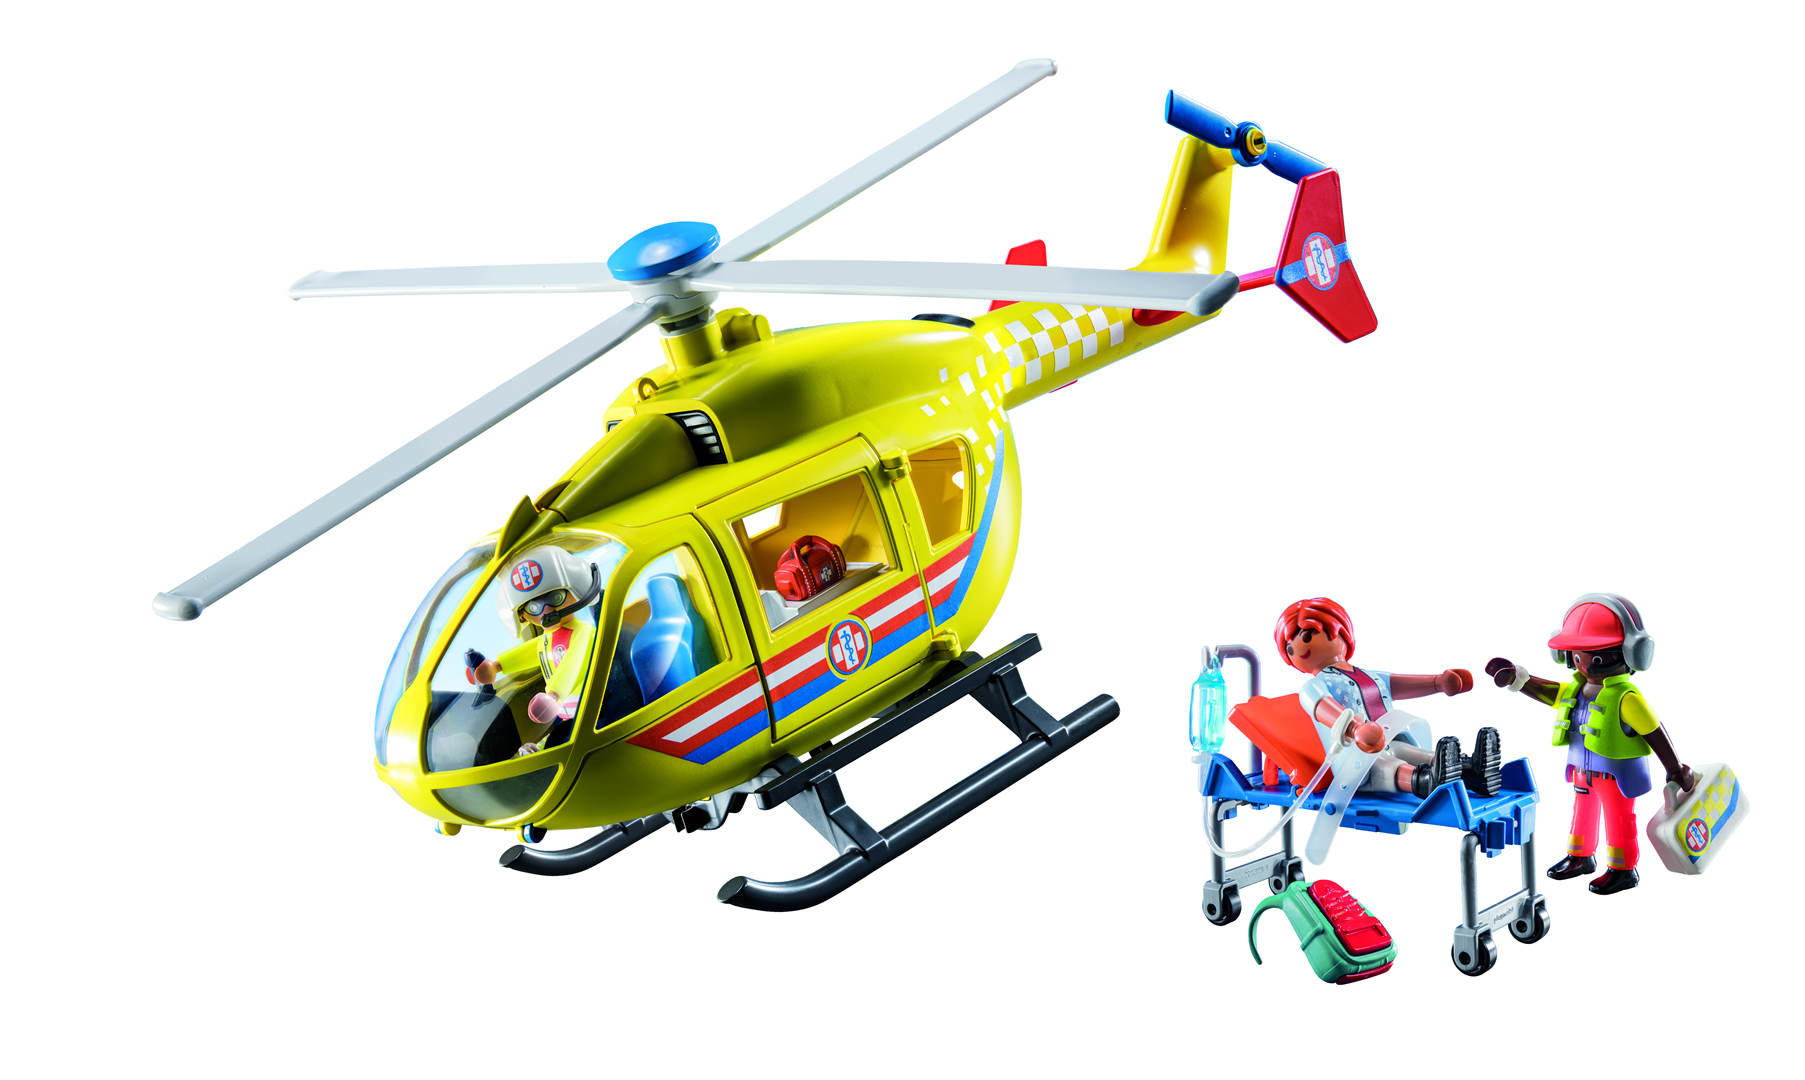 Playmobil city life 71203 elicottero di soccorso per bambini dai 4 anni in su - Playmobil